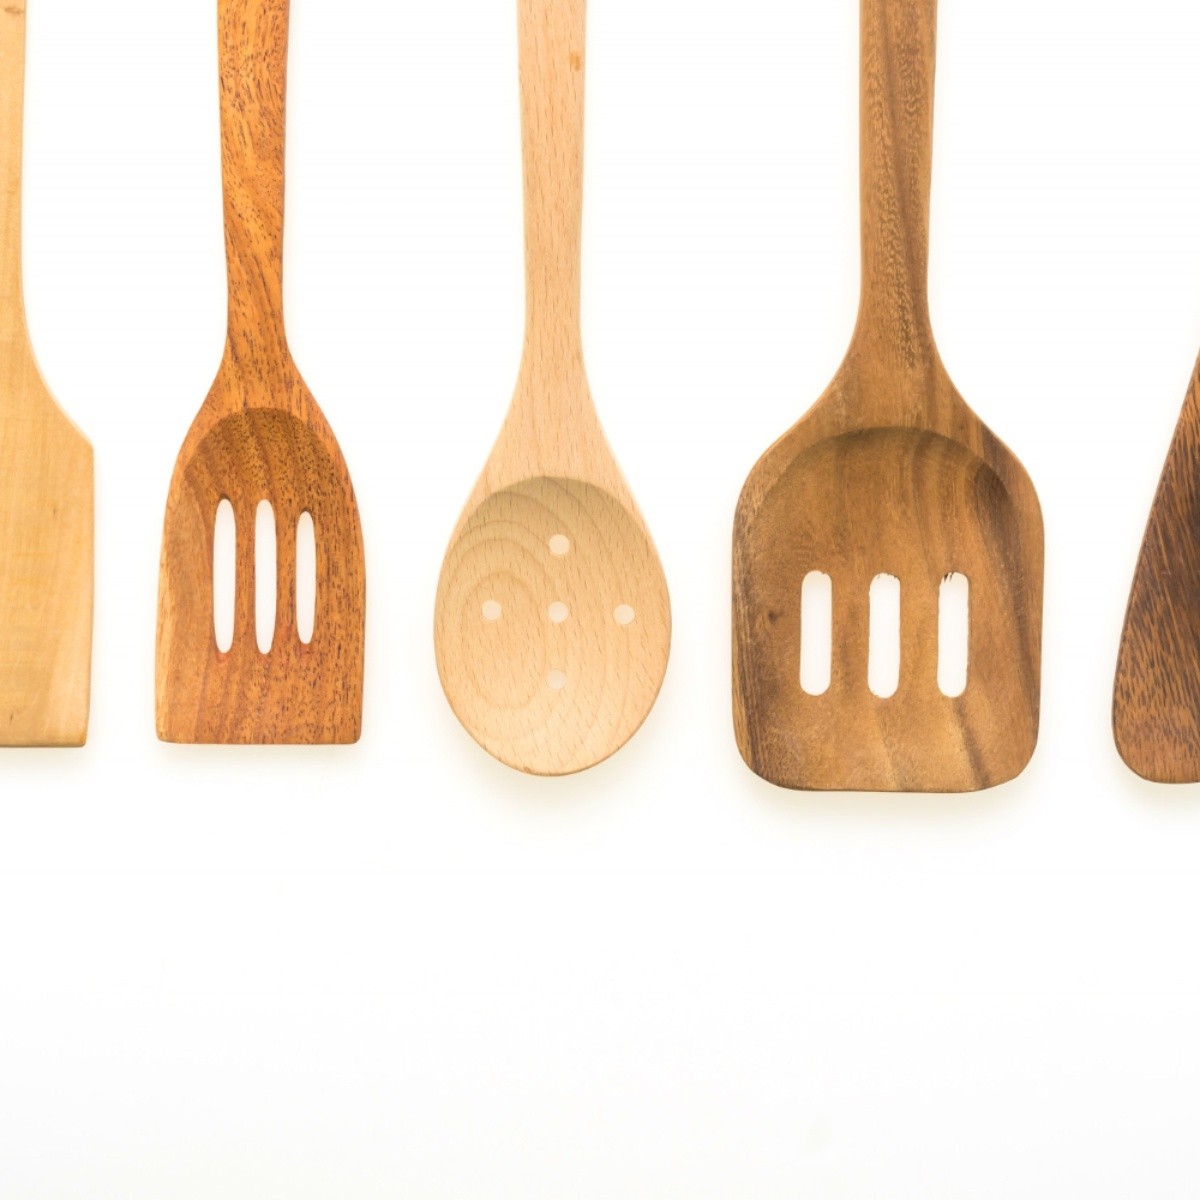 Deshazte de los utensilios de madera de tu cocina si encuentras esto